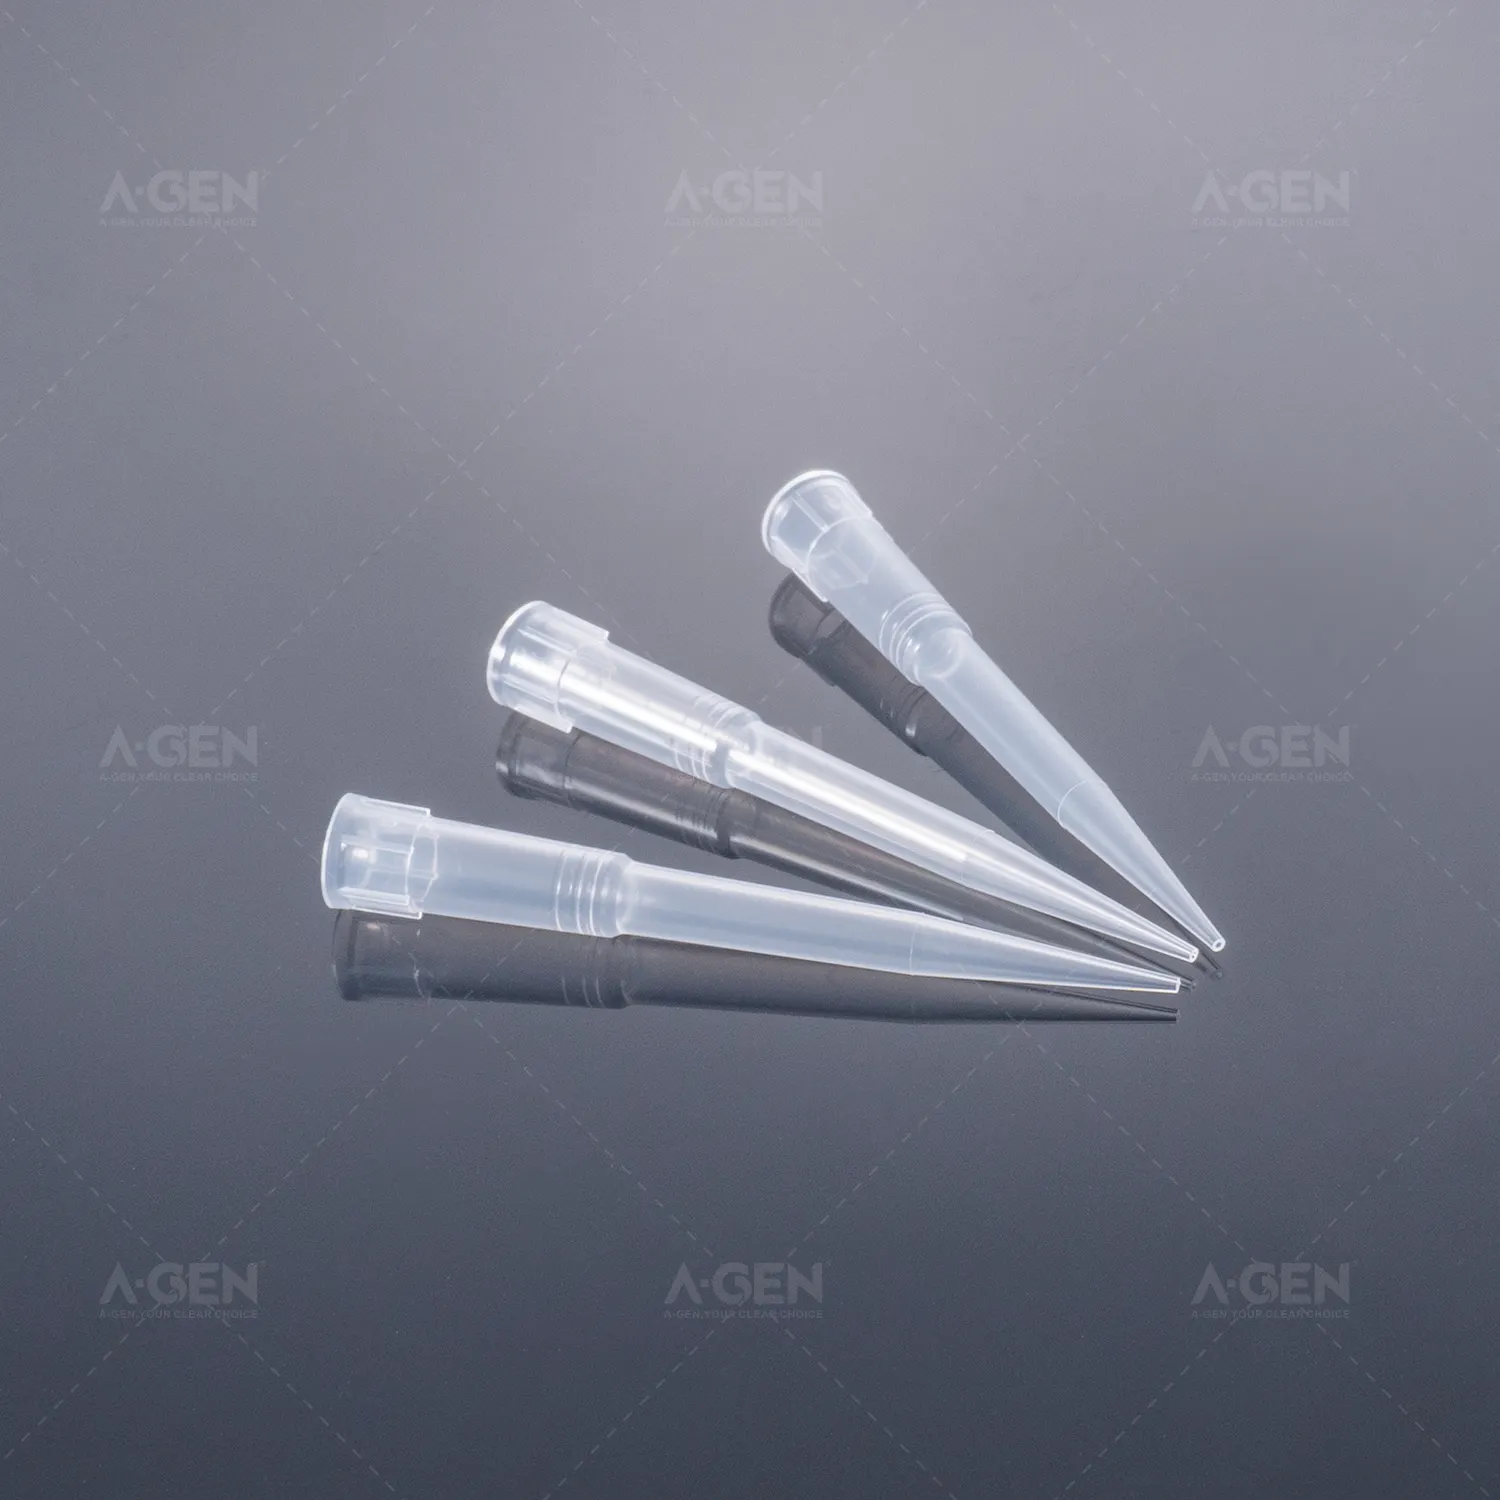 200uL Tecan Liha ucu filtre steril robotik ucu ile temizle pipet uçları (düşük tutma isteğe bağlıdır, SBS standardı)